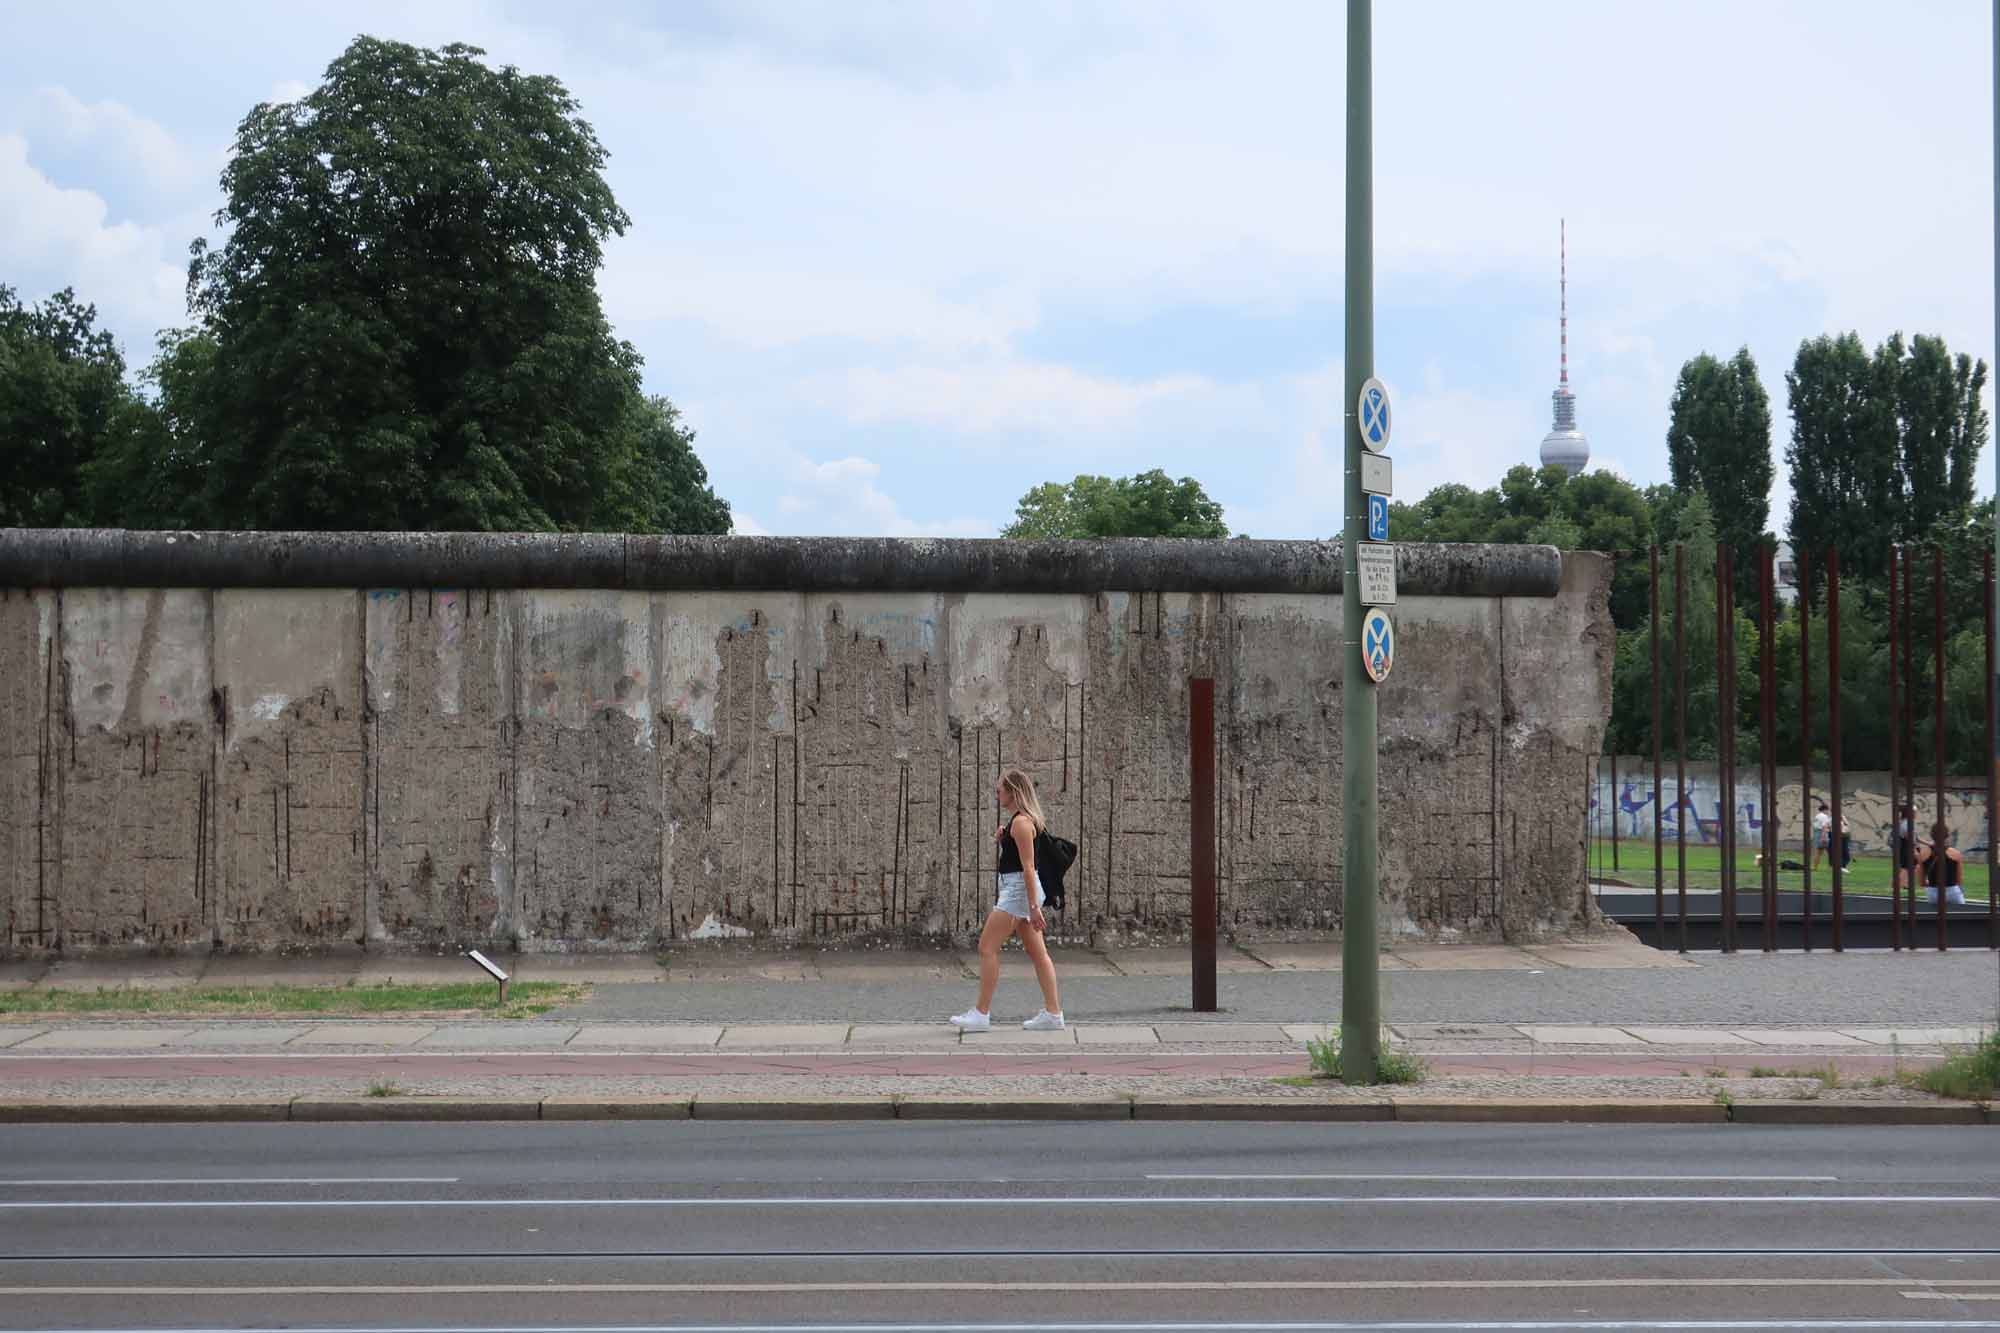 ベルリンの壁はどこにあったのか / ベルリンの壁の地図と壁のあった場所の見つけ方 | ドイツ便り